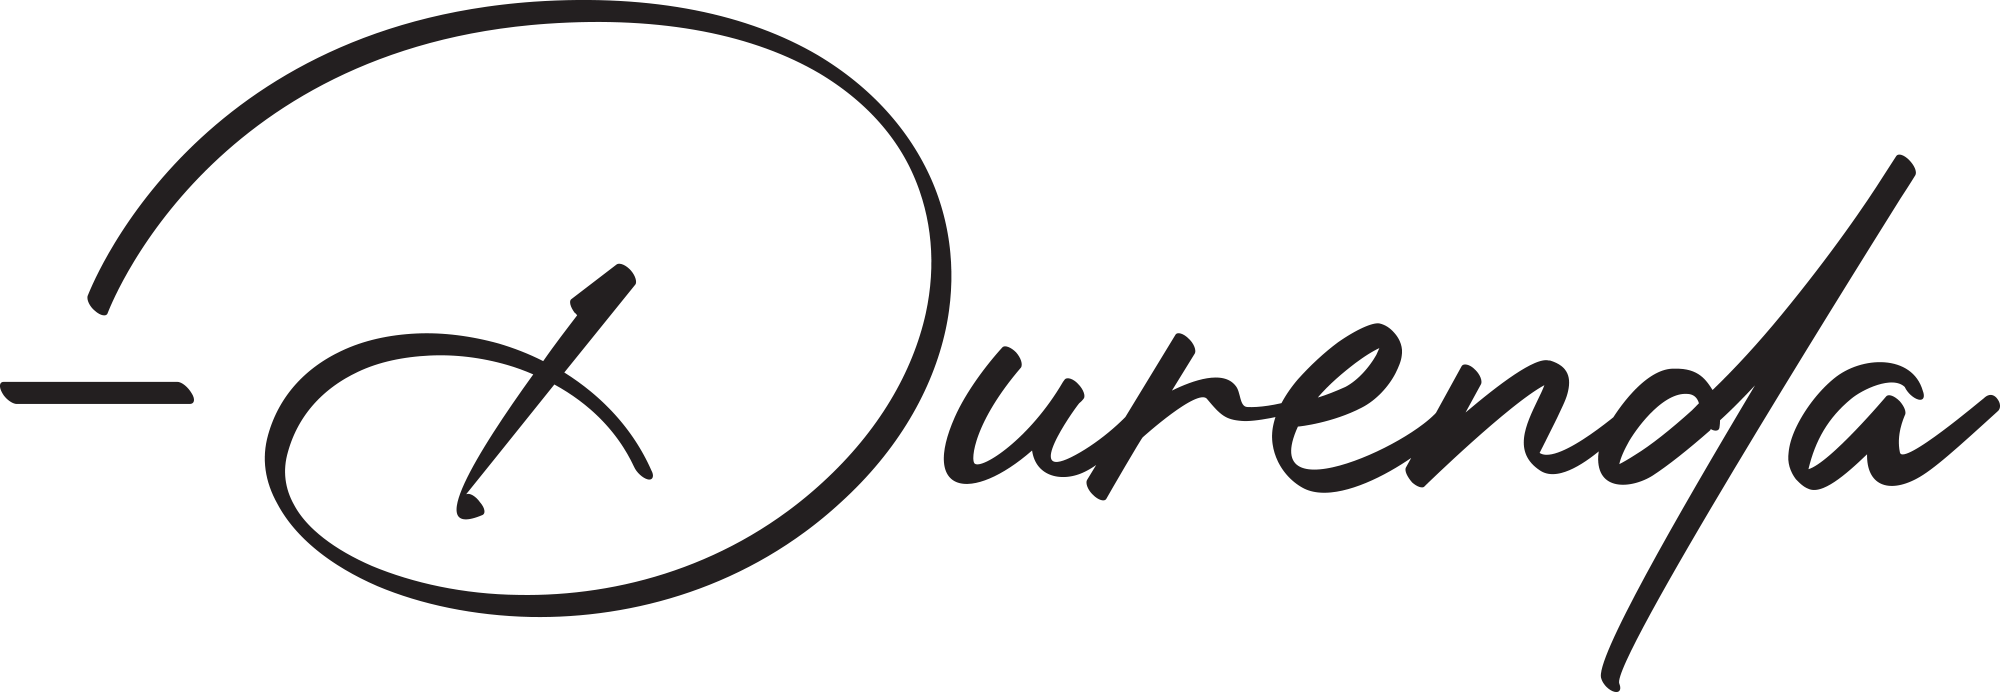 Durenda signature